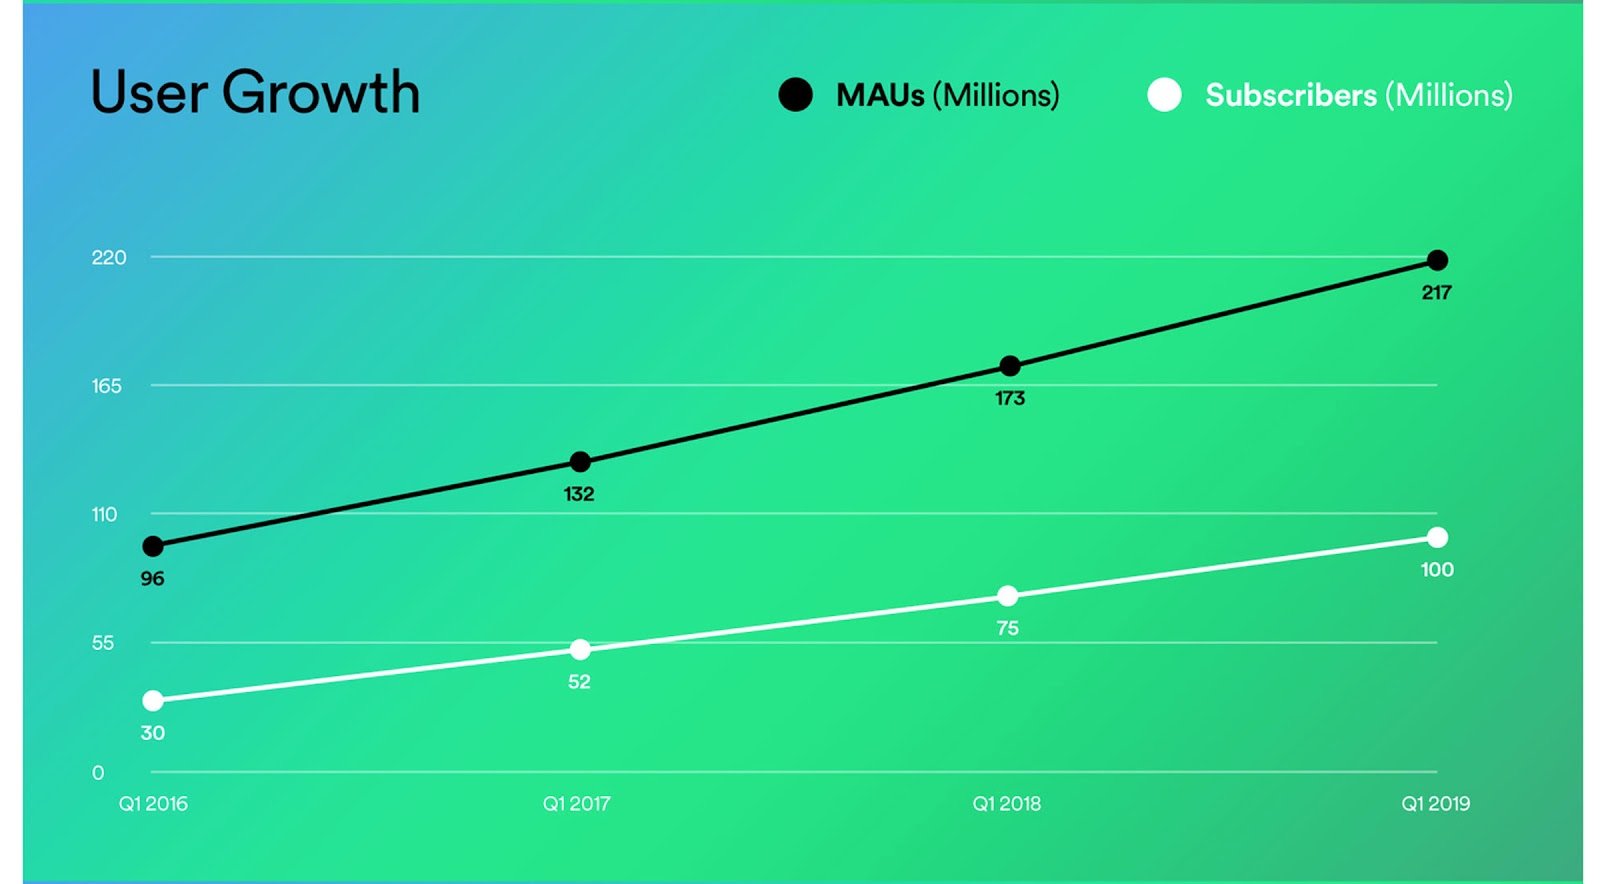 Spotify ha ora 100 milioni di abbonati a pagamento e 217 milioni di utenti attivi mensili in totale; commercializzazione del campionamento del prodotto